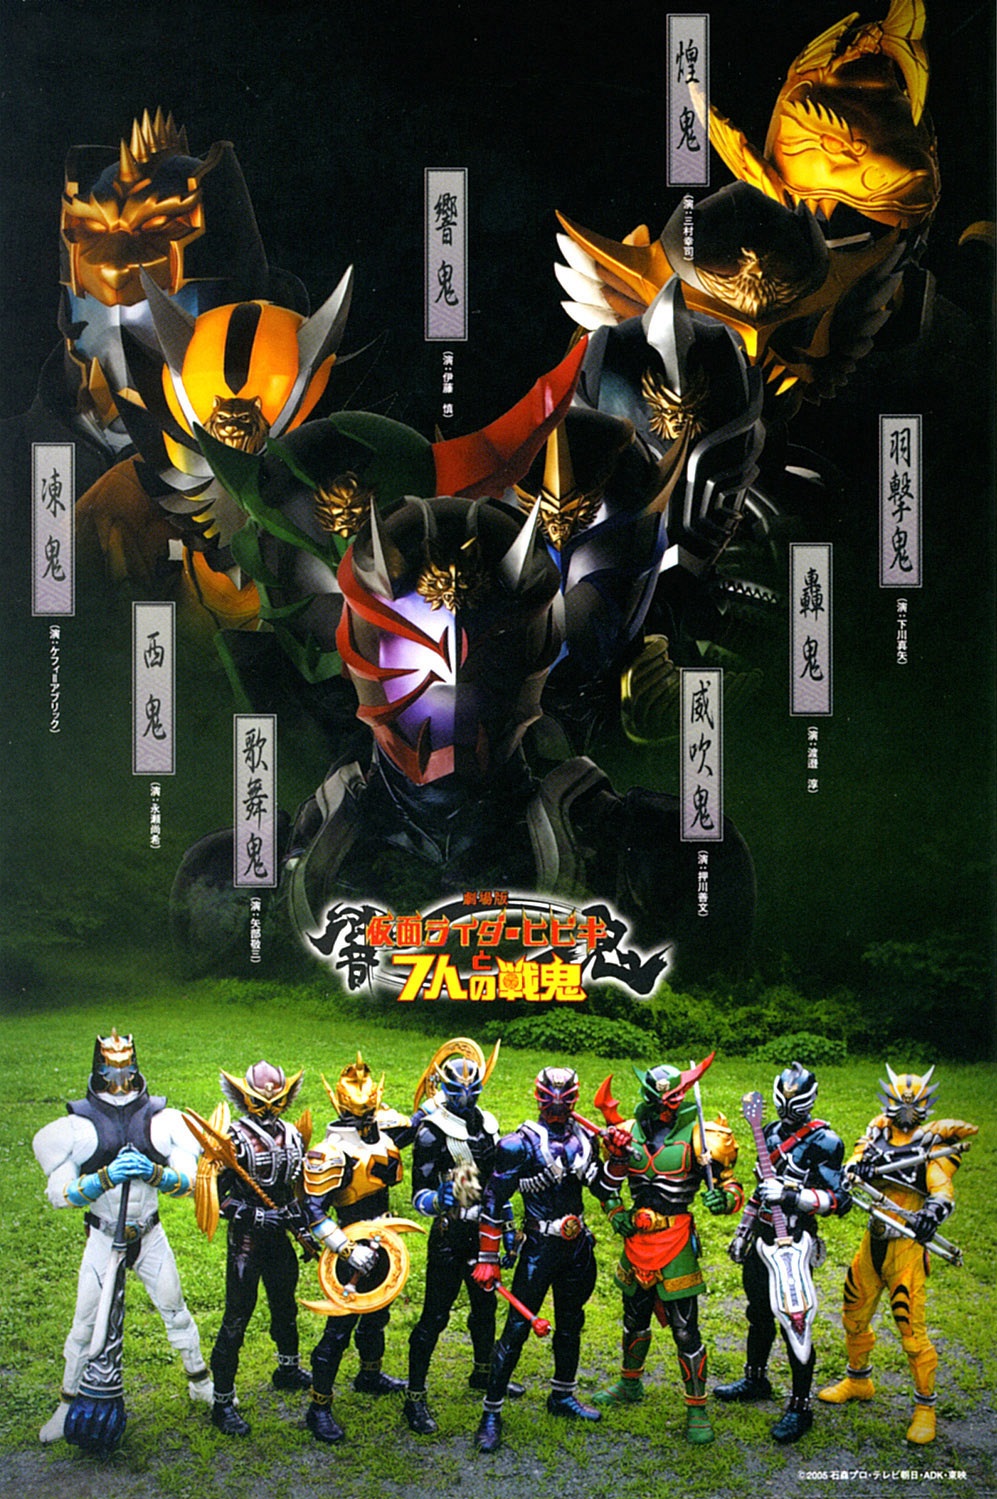 Kamen rider hibiki và bảy con quỷ chiến đấu - Kamen rider hibiki and the seven senki movie